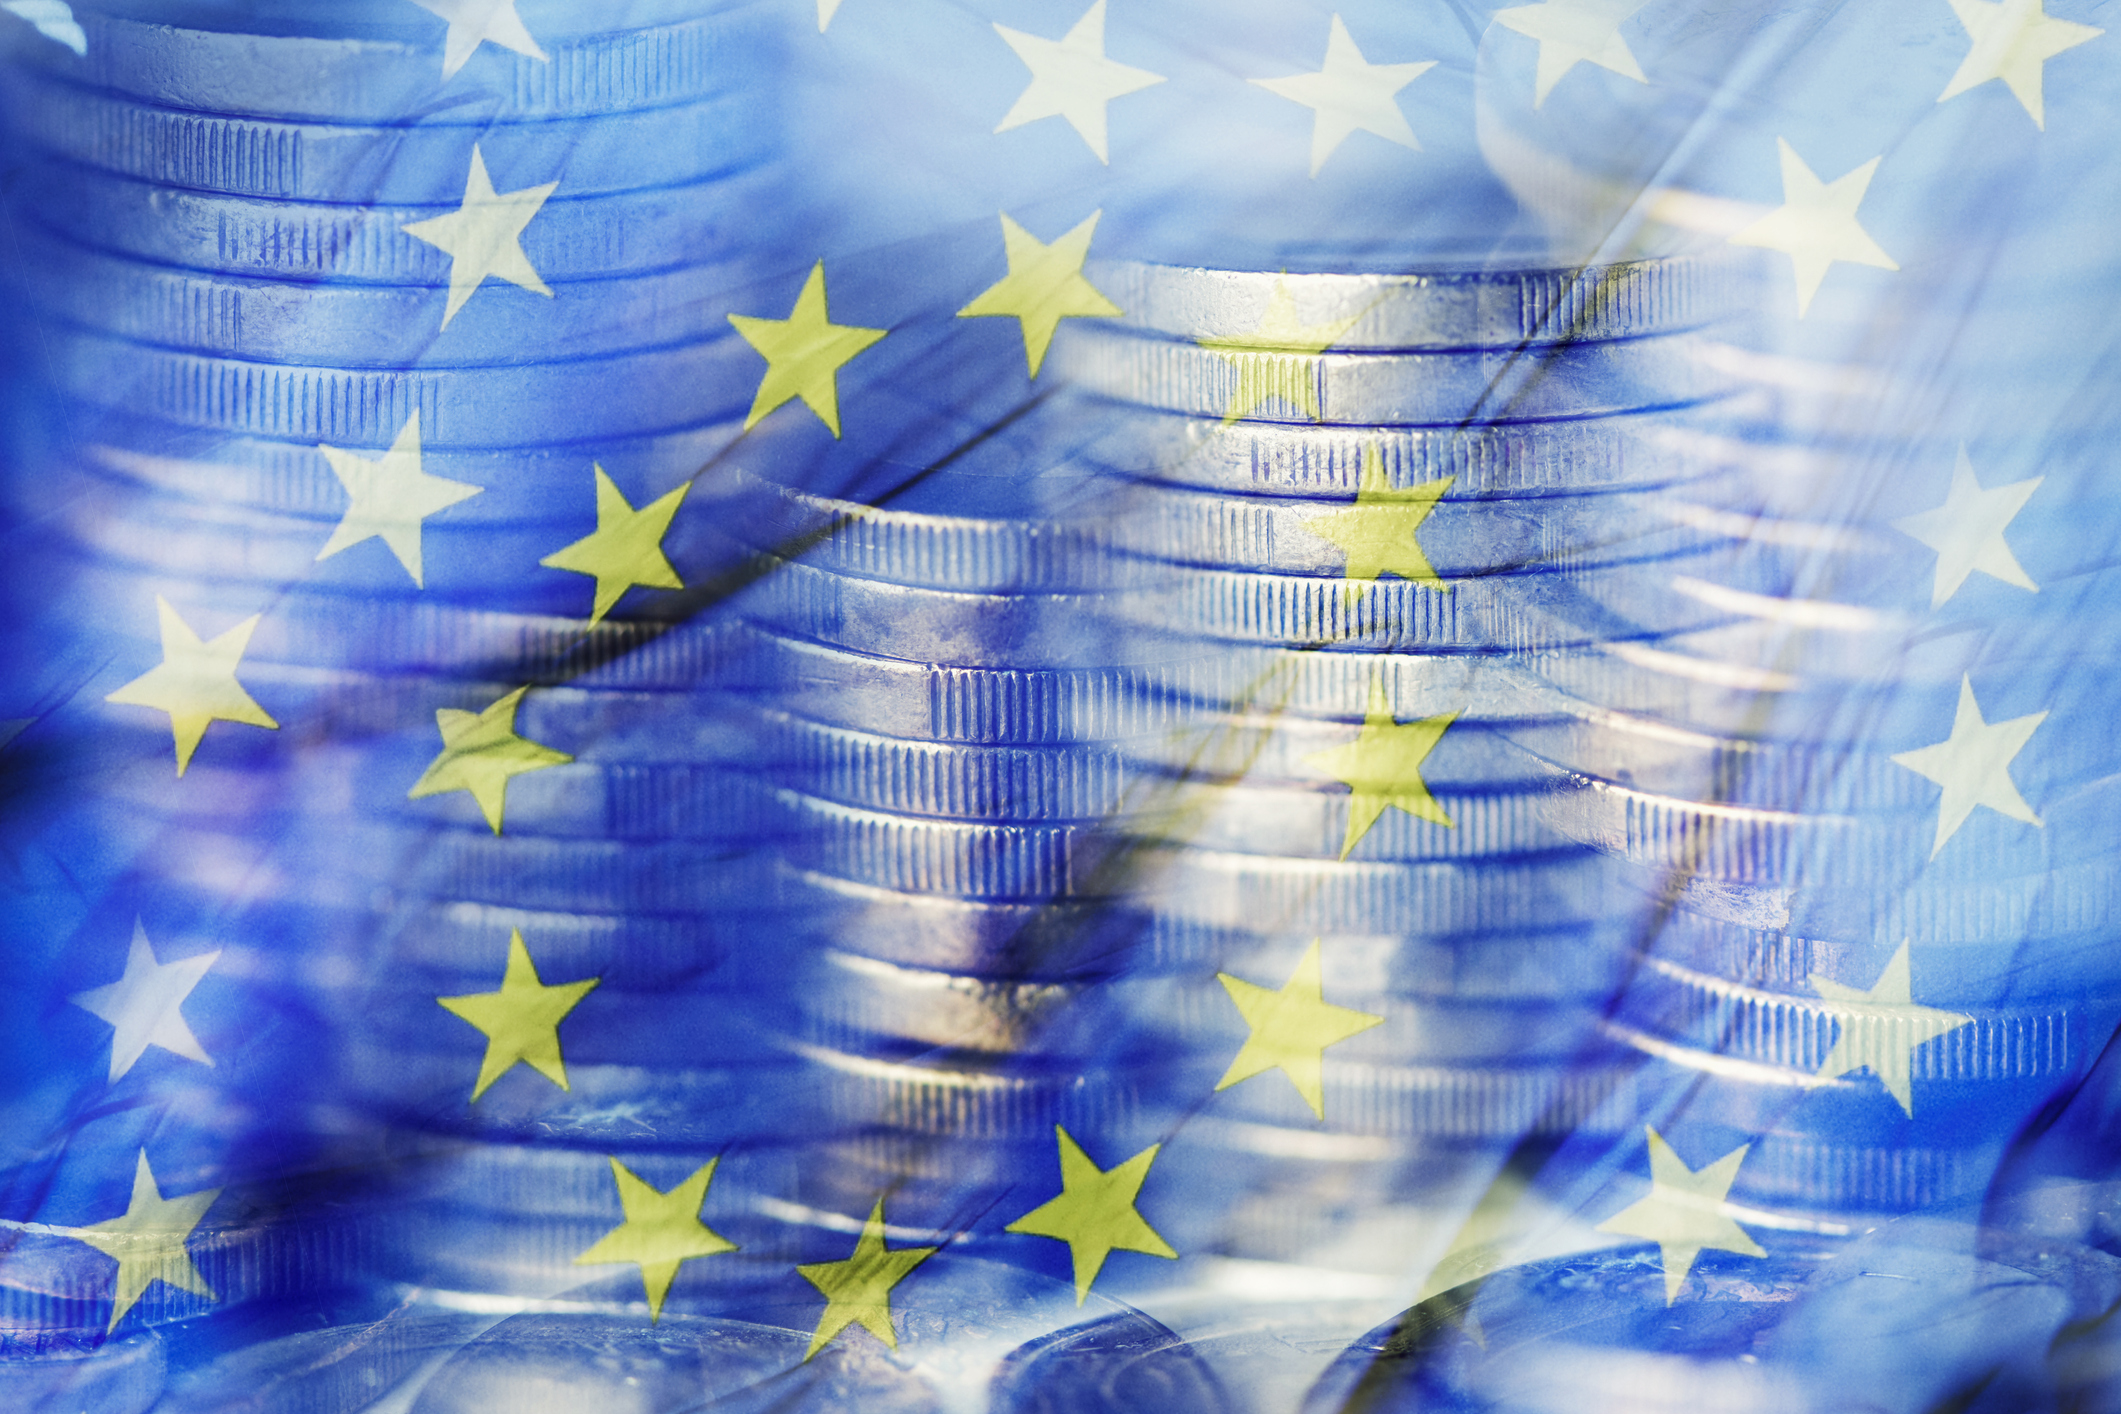 Imatge difuminada amb monedes apilades i la bandera de la Comunitat Europea